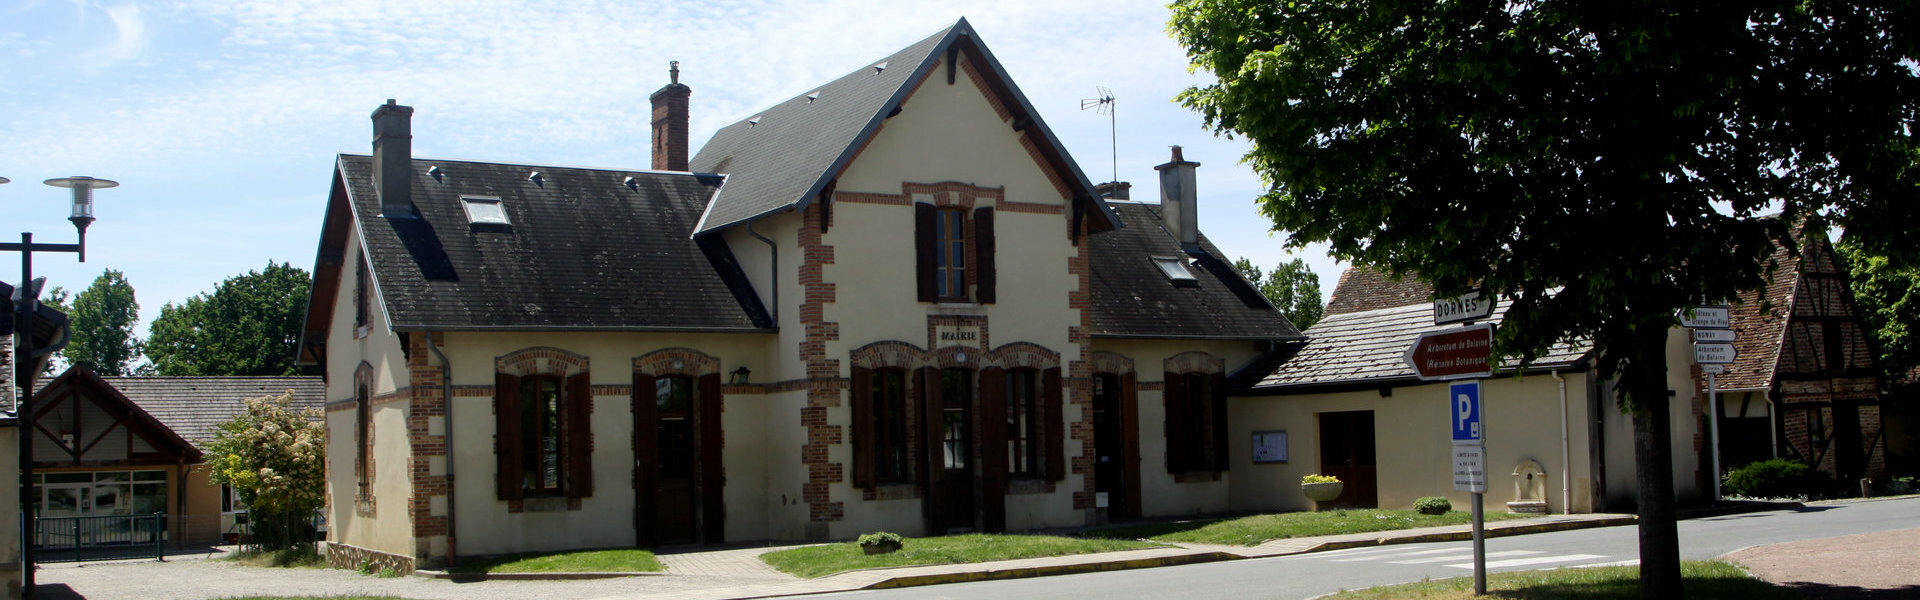 Commune Mairie Allier Moulins Auvergne Rhônes Alpes